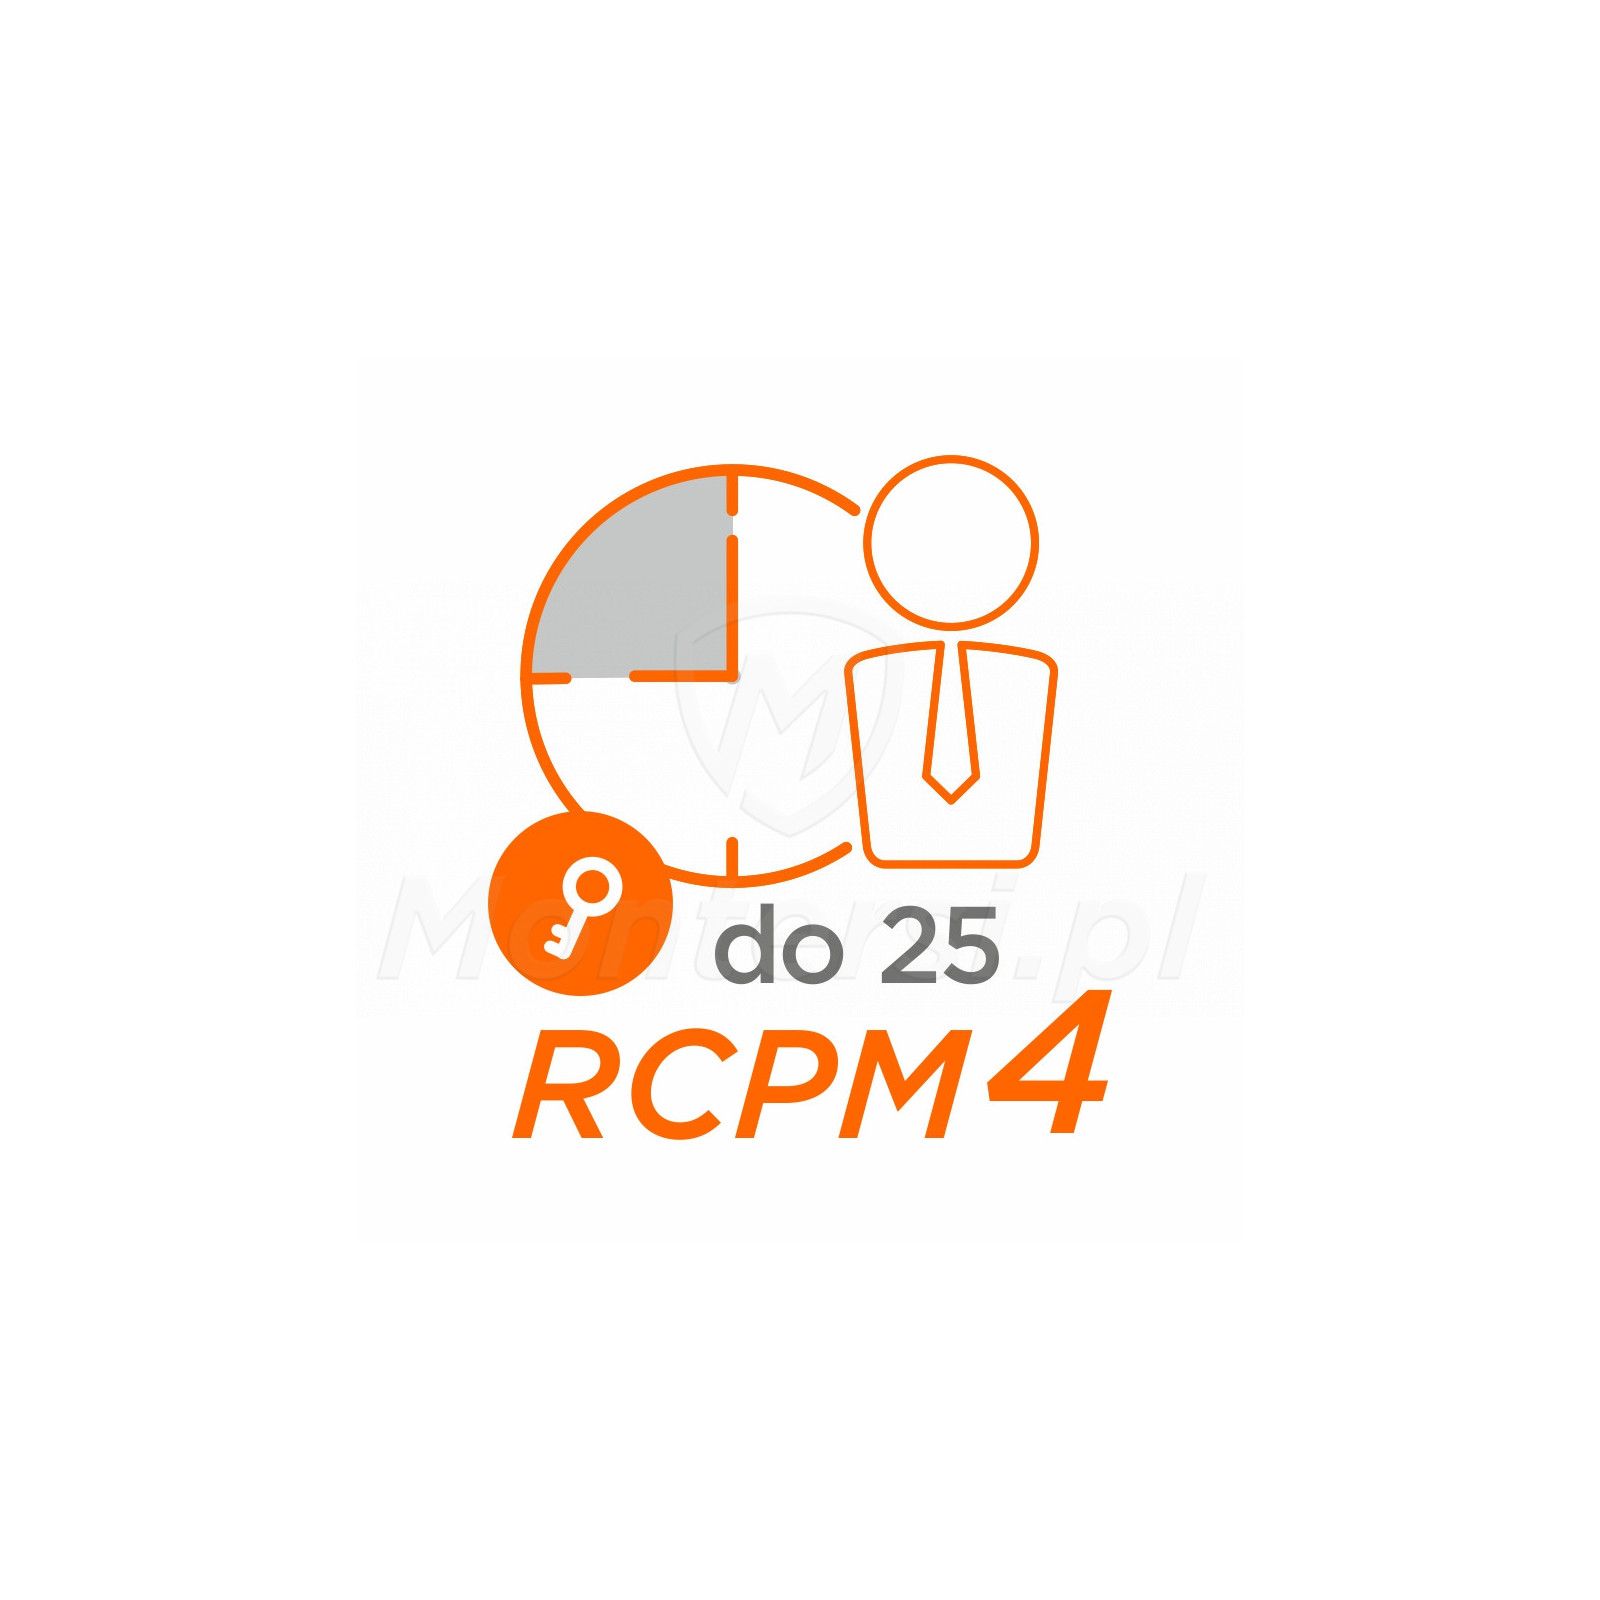 RCPM4-25 - Klucz licencji RCP Master 4, 25 pracowników